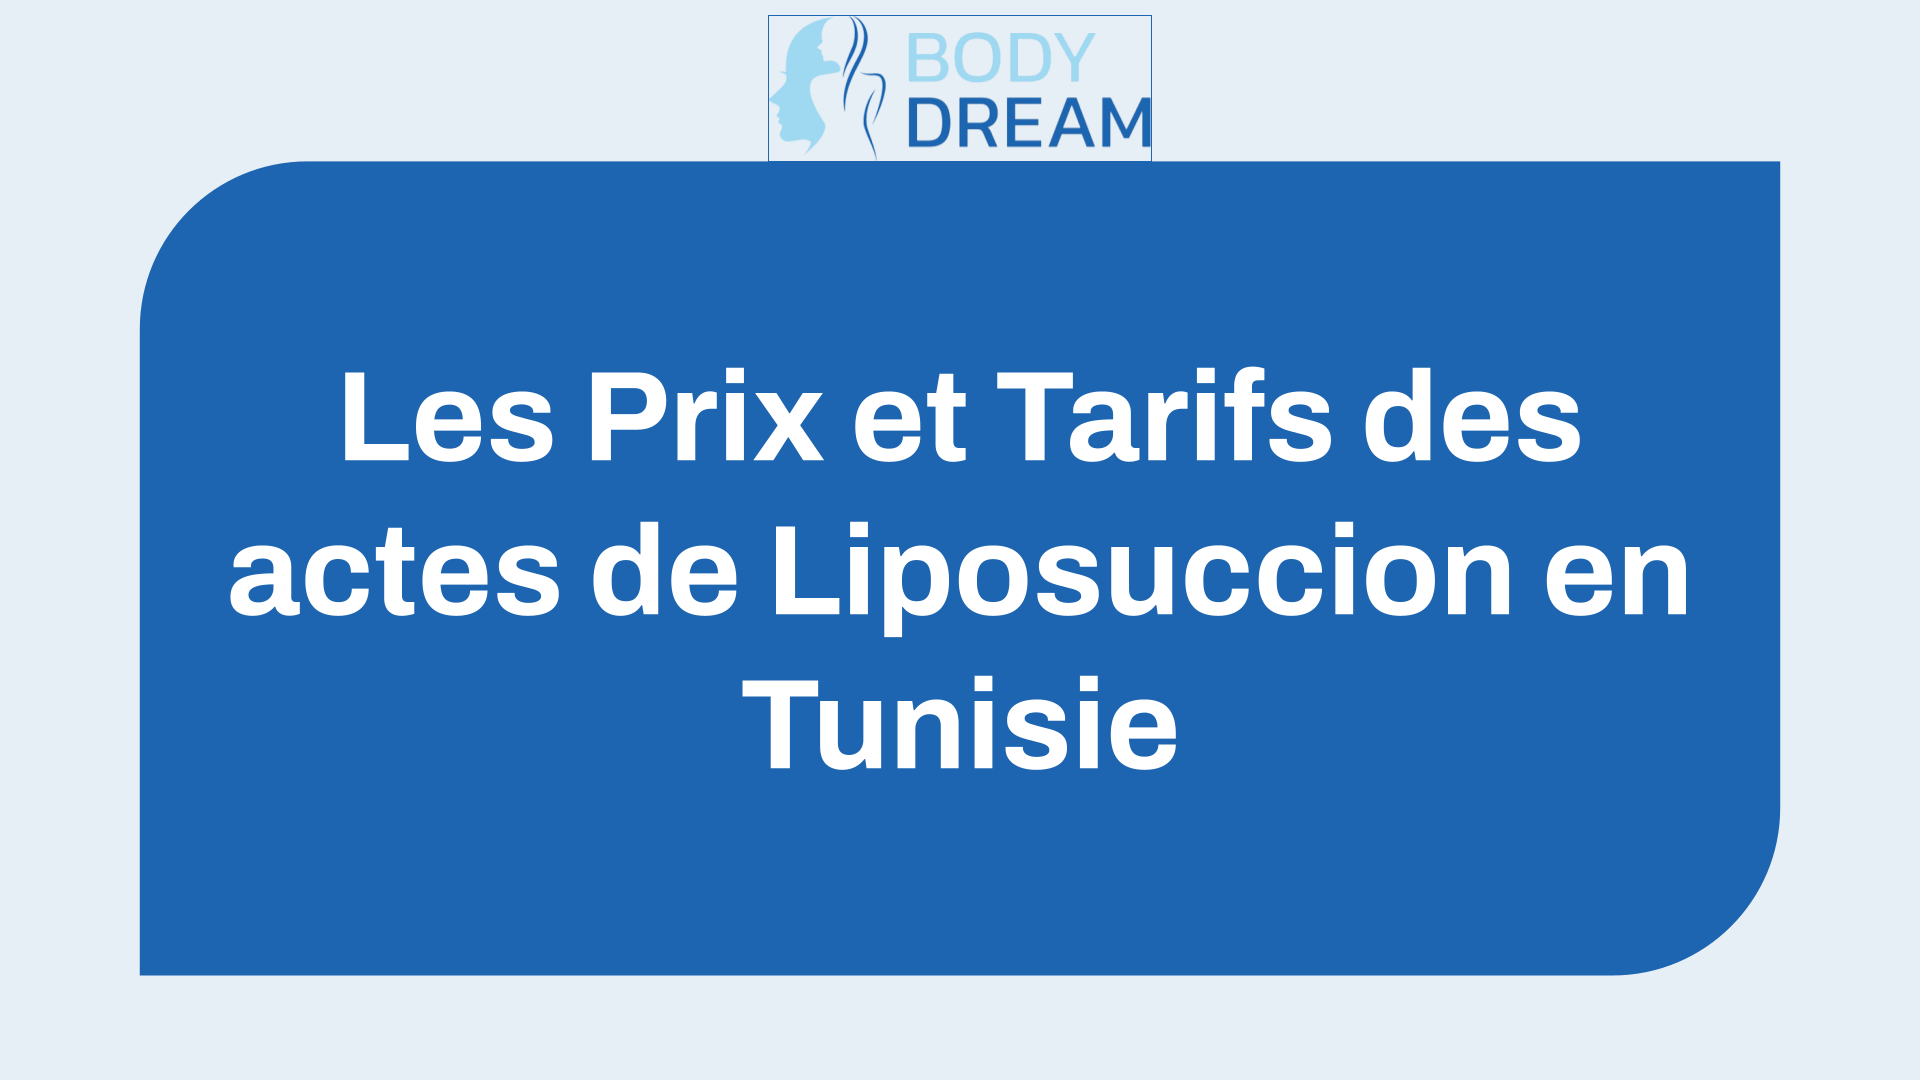 Les Prix et Tarifs des actes de Liposuccion en Tunisie